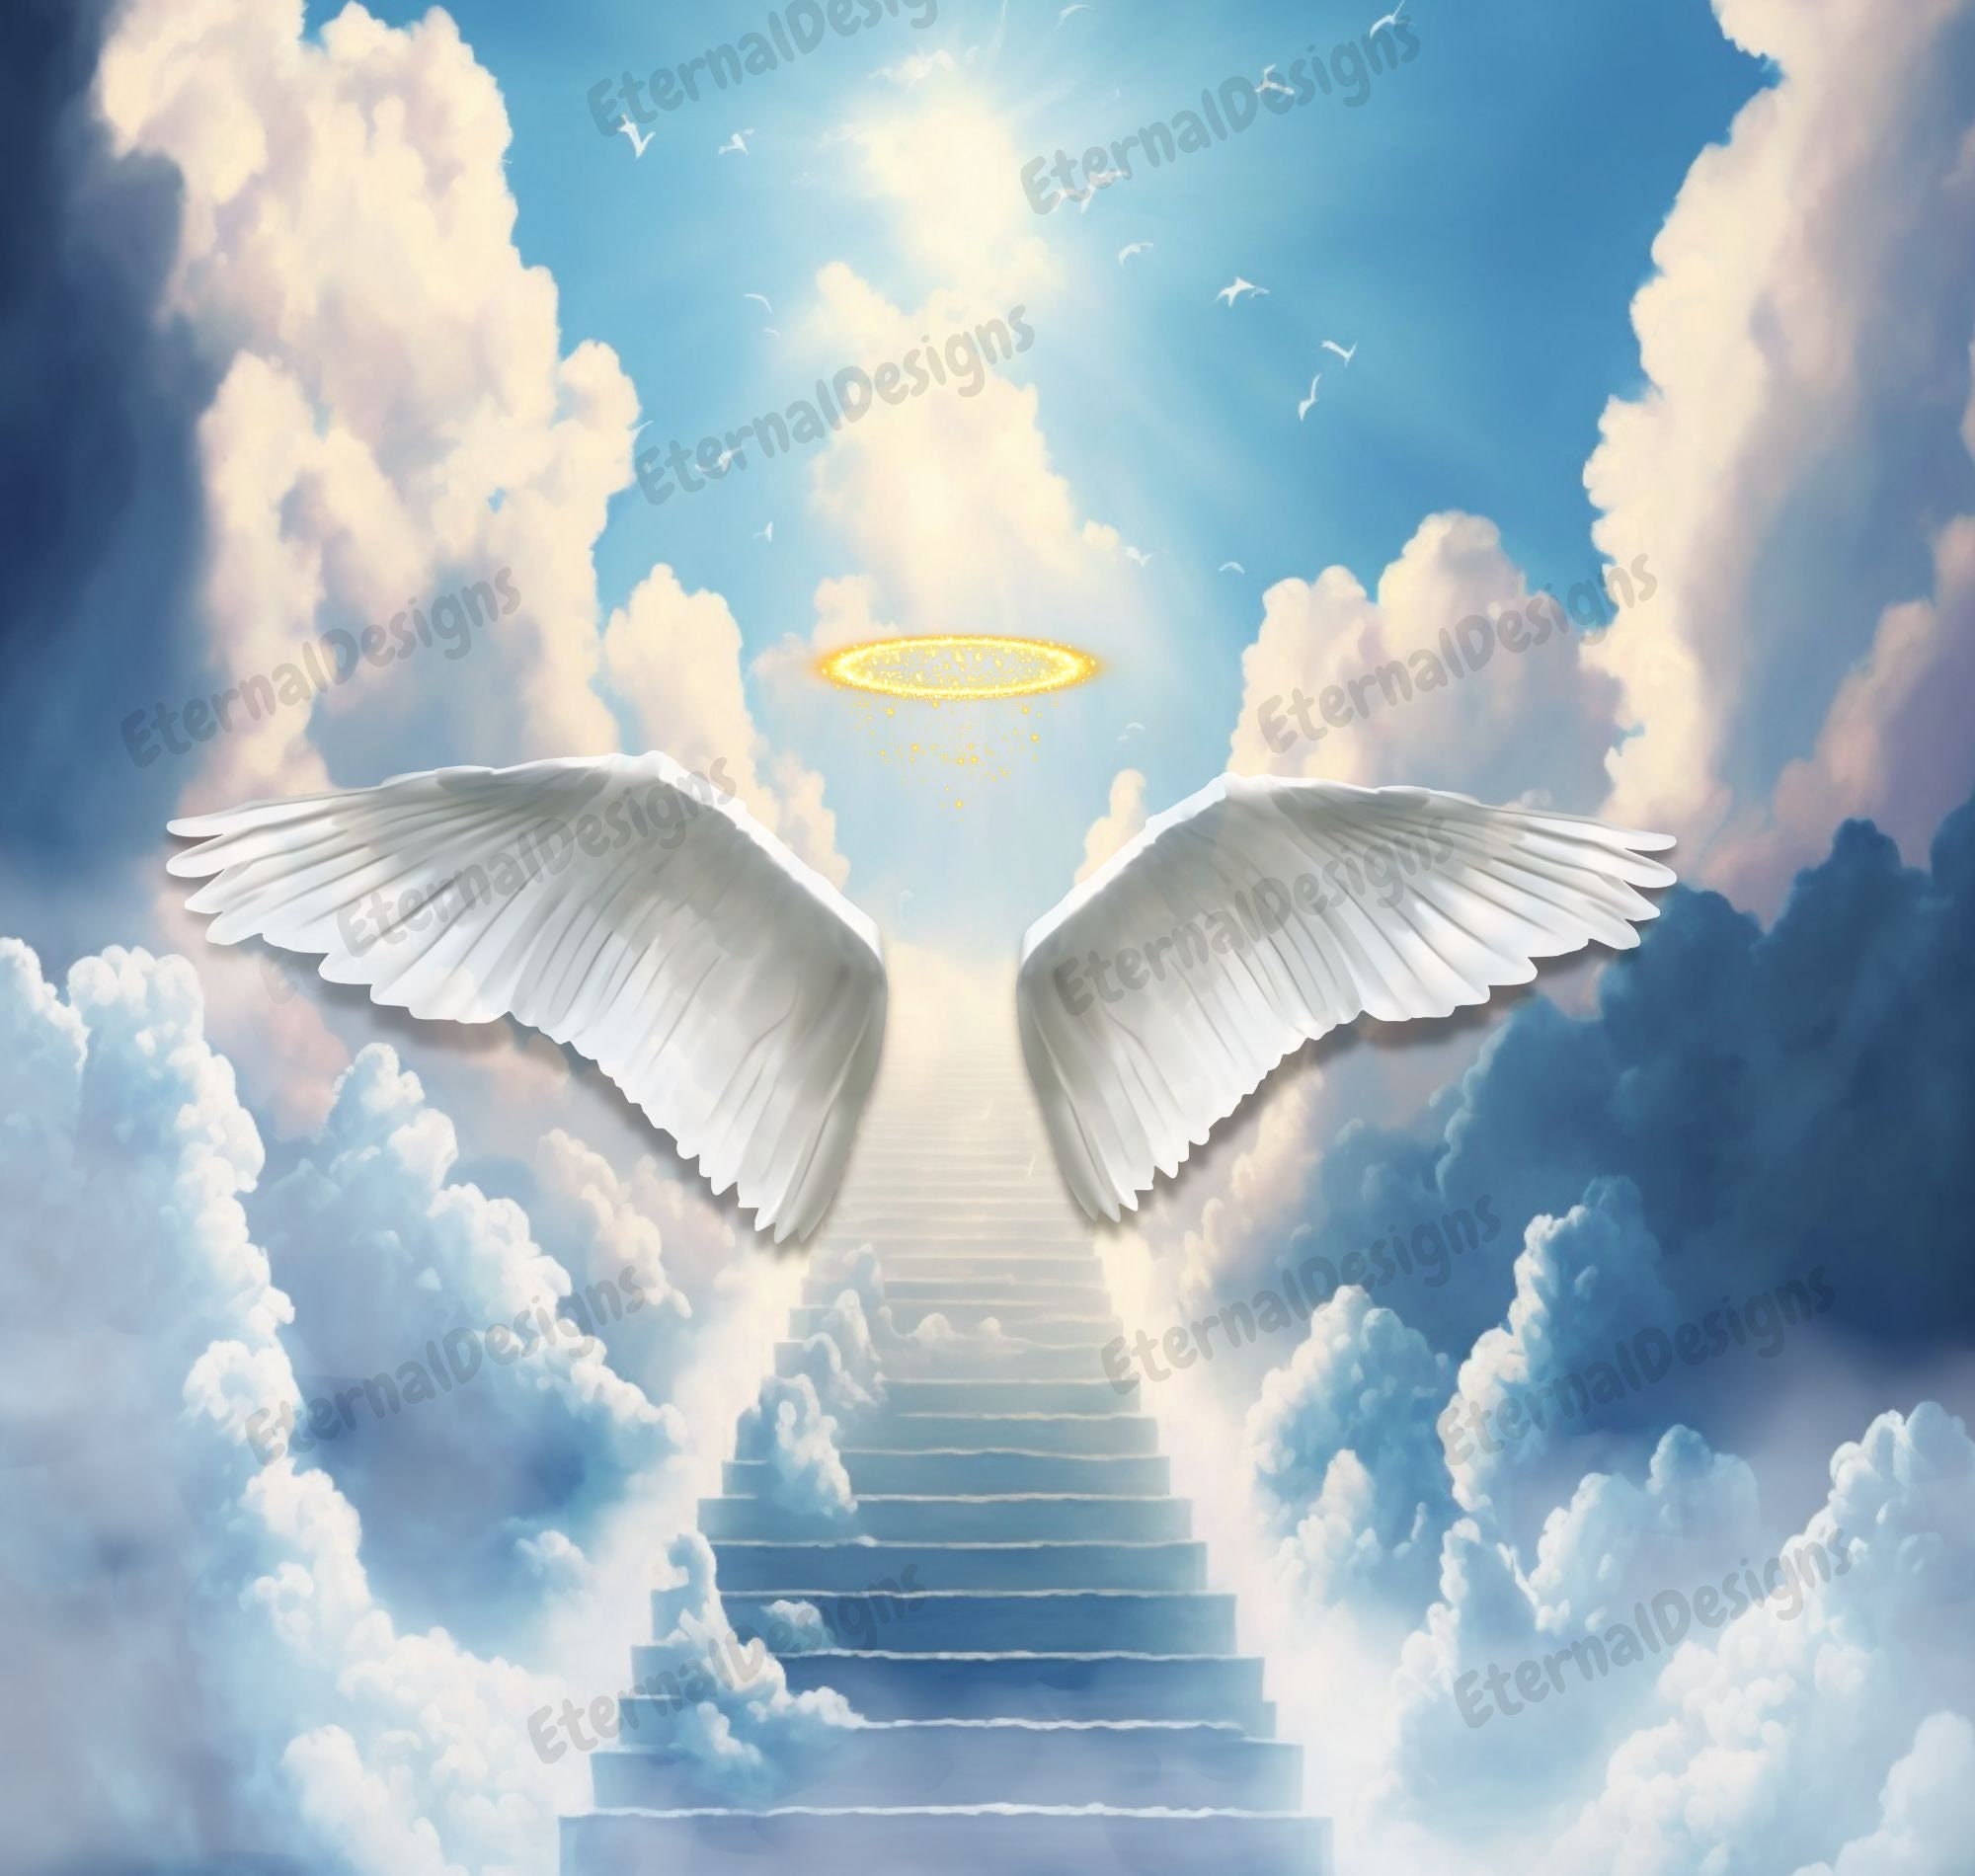 In Loving Memory PNG Memorial Background stairway to Heaven 